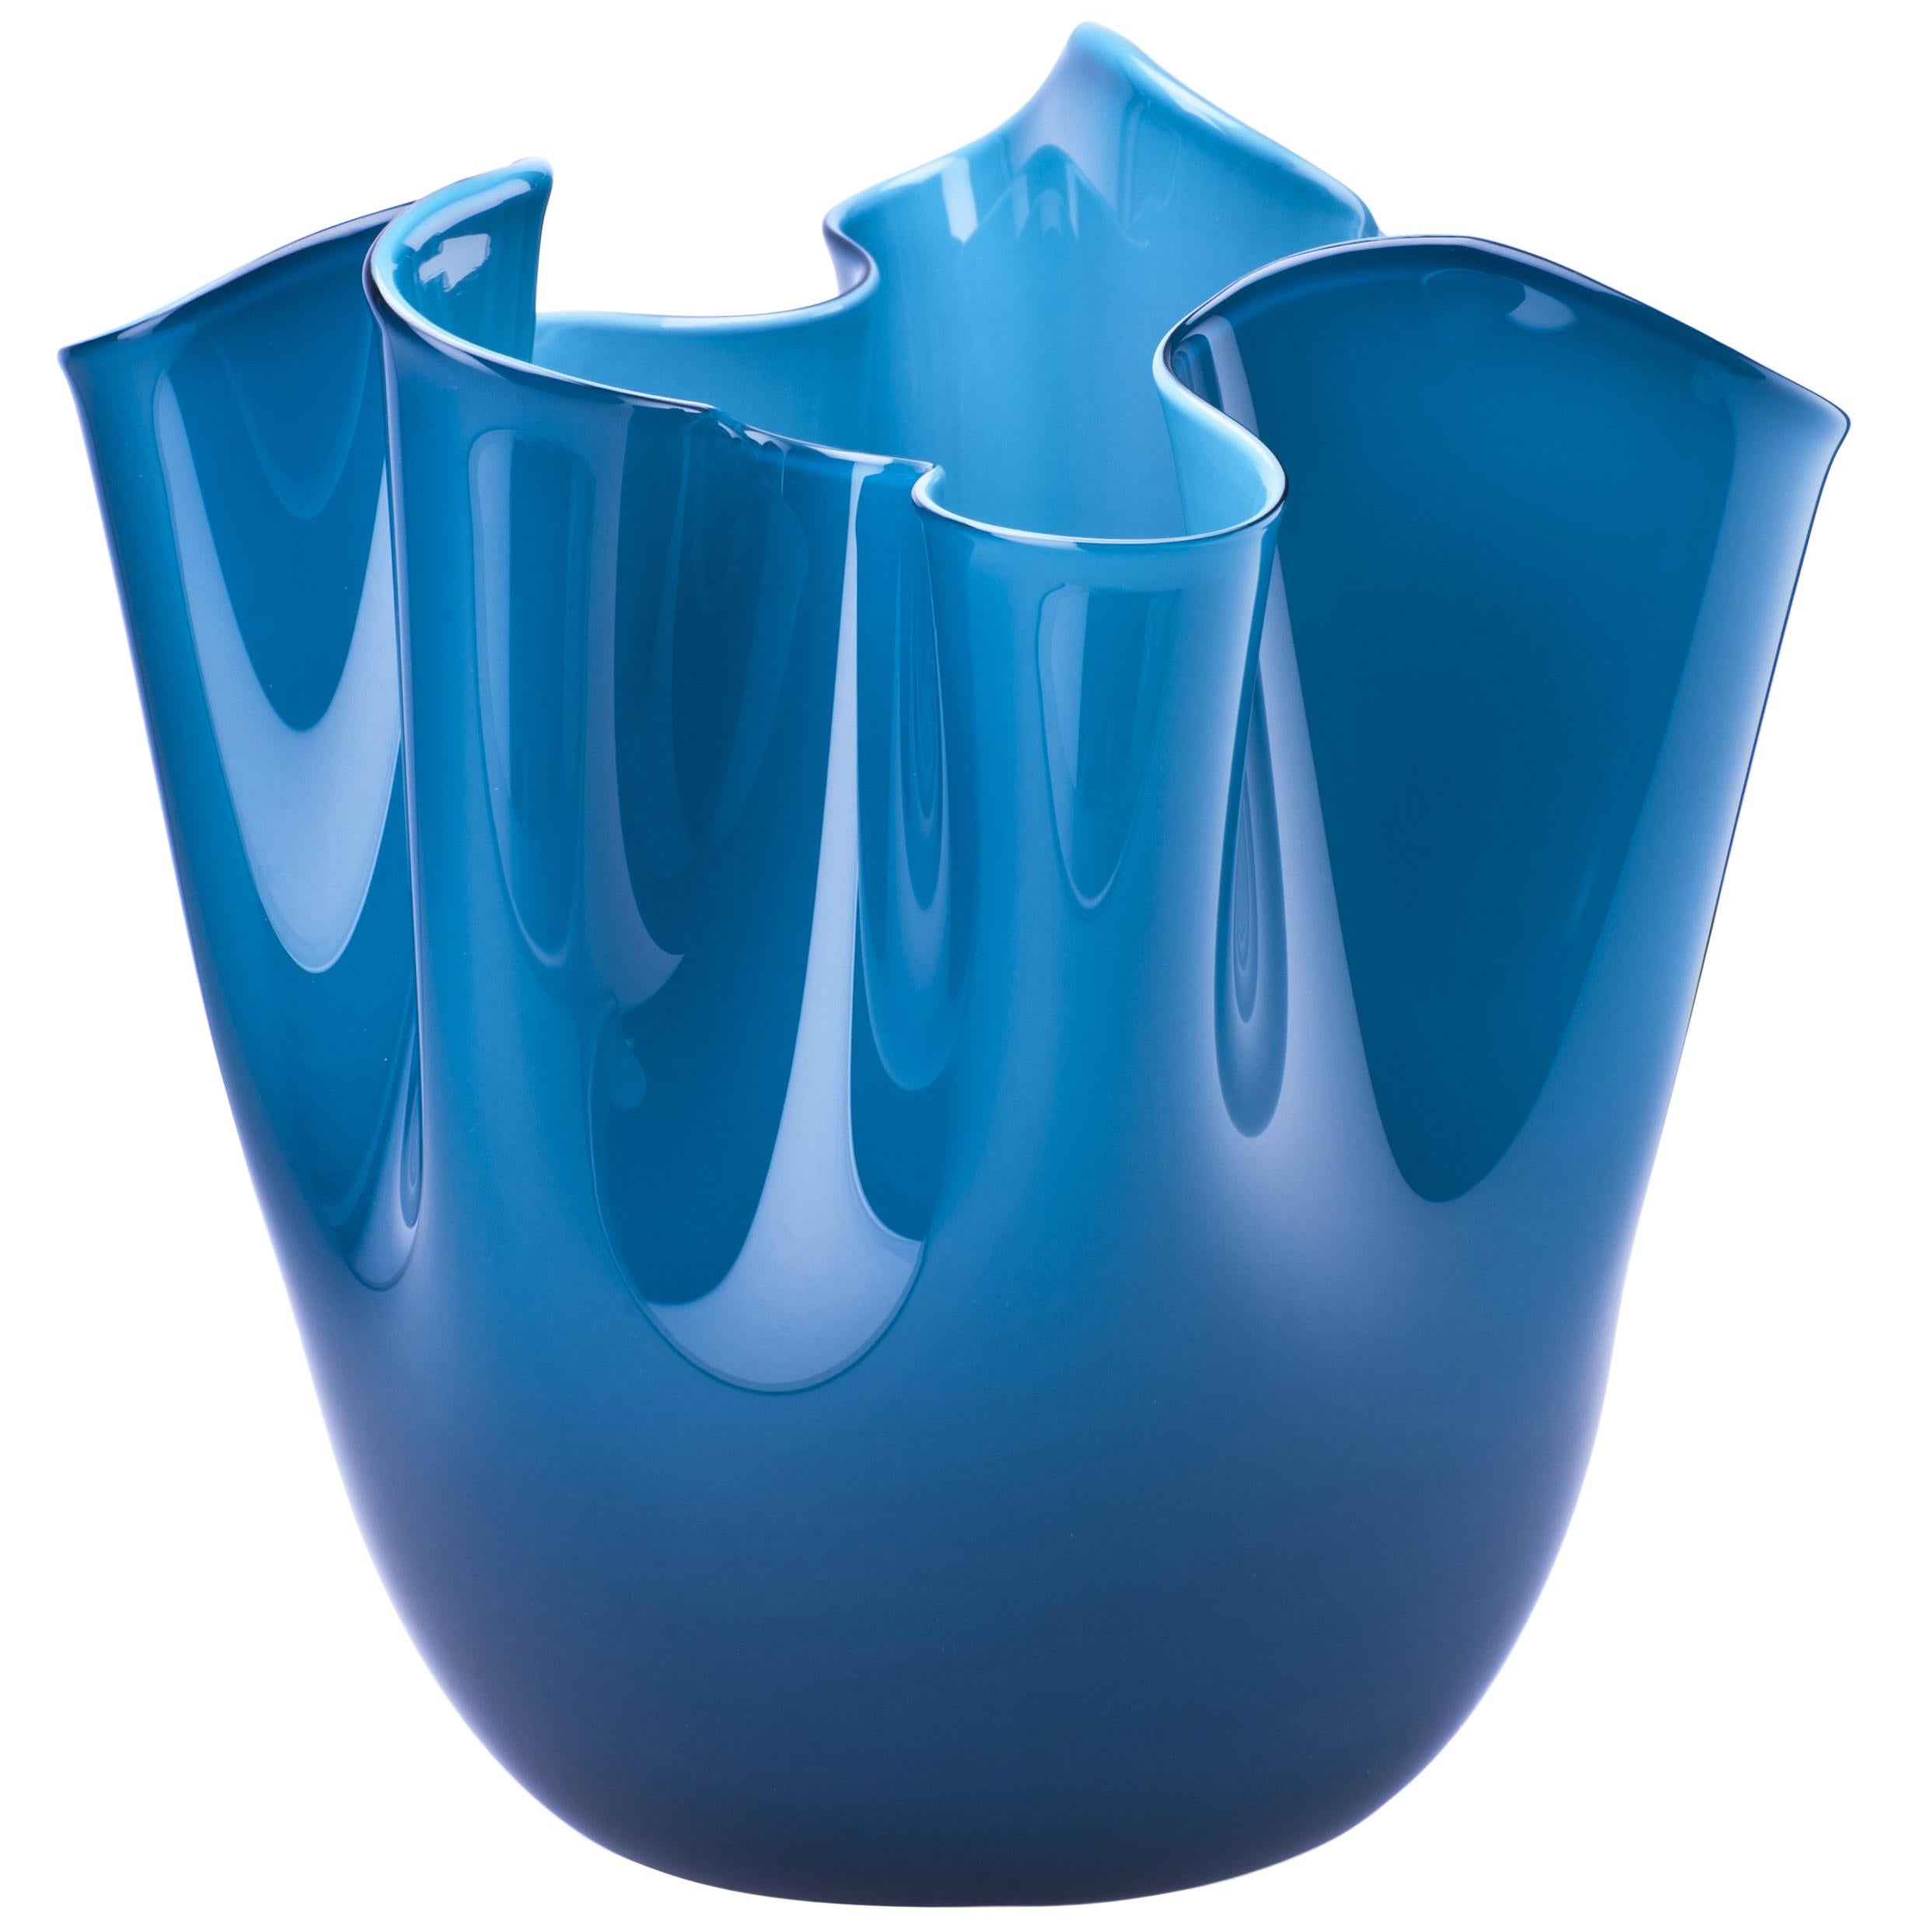 Fazzoletto Glass Vase in Horizon & Aquamarine by Fulvio Bianconi & Paolo Venini For Sale